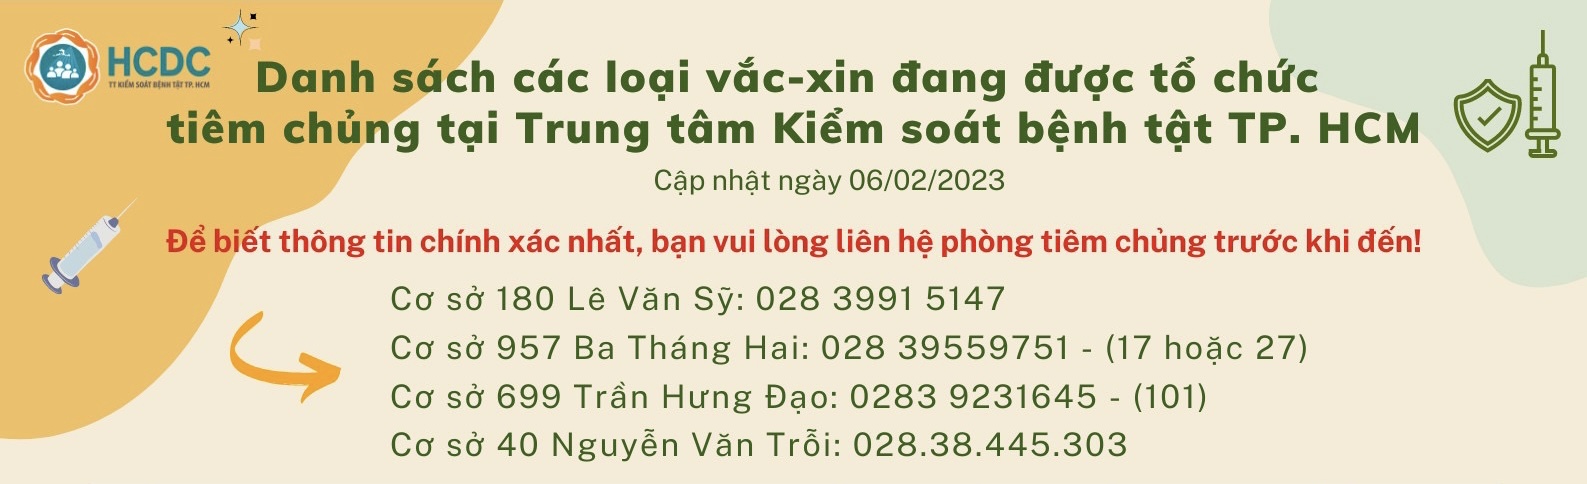 Danh sách các loại vắc-xin đang được tổ chức tiêm chủng tại Trung tâm Kiểm soát bệnh tật TP. Hồ Chí Minh (Ngày 06/02/2023)